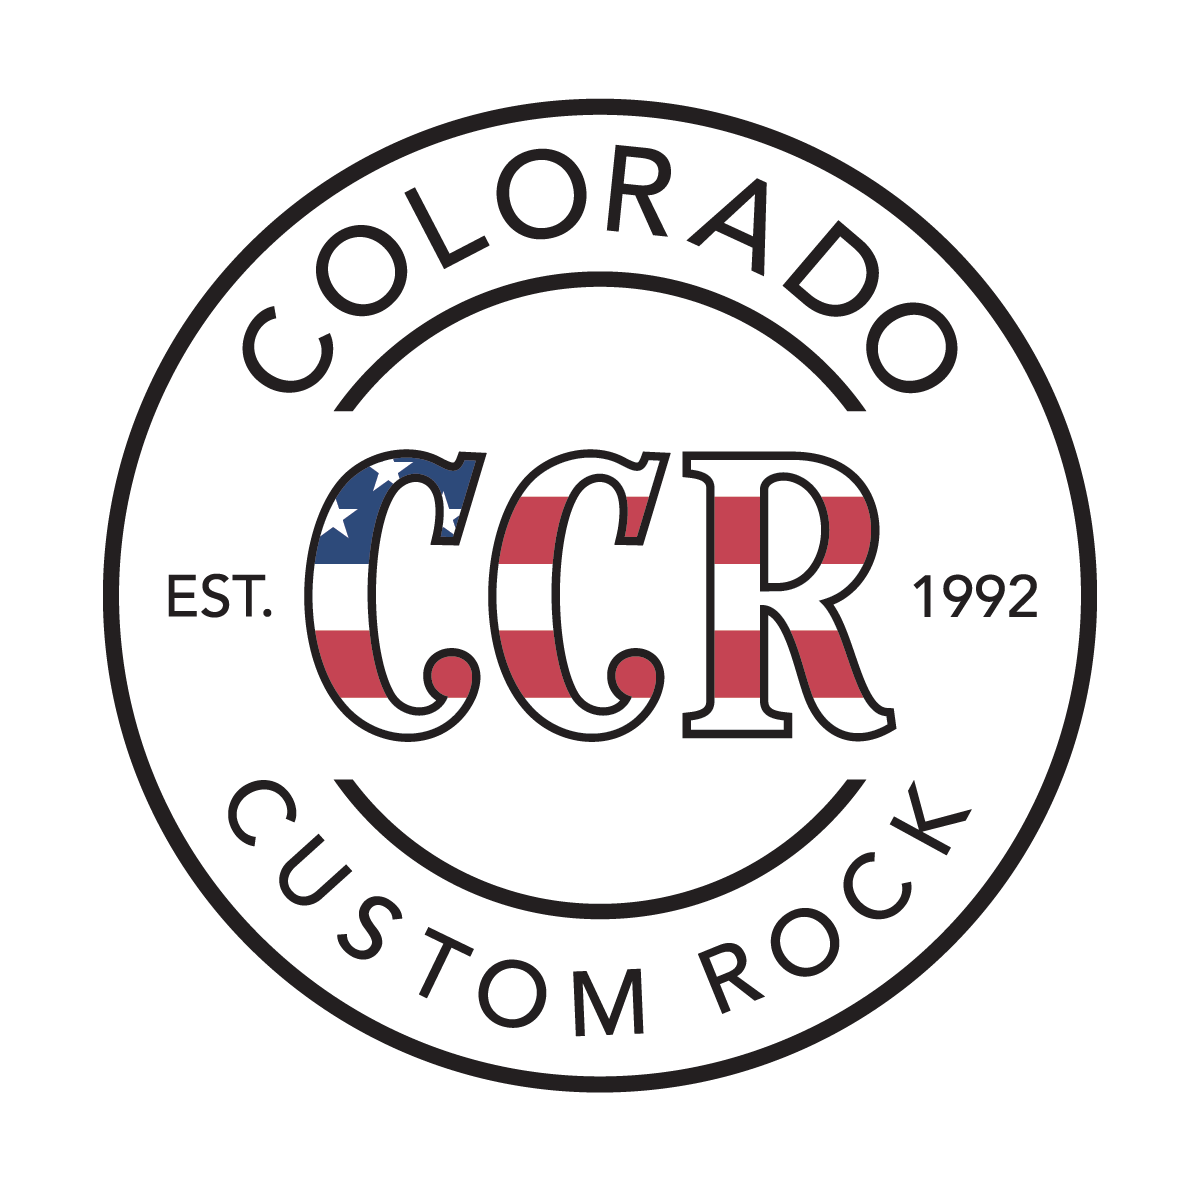 Colorado Custom Rock